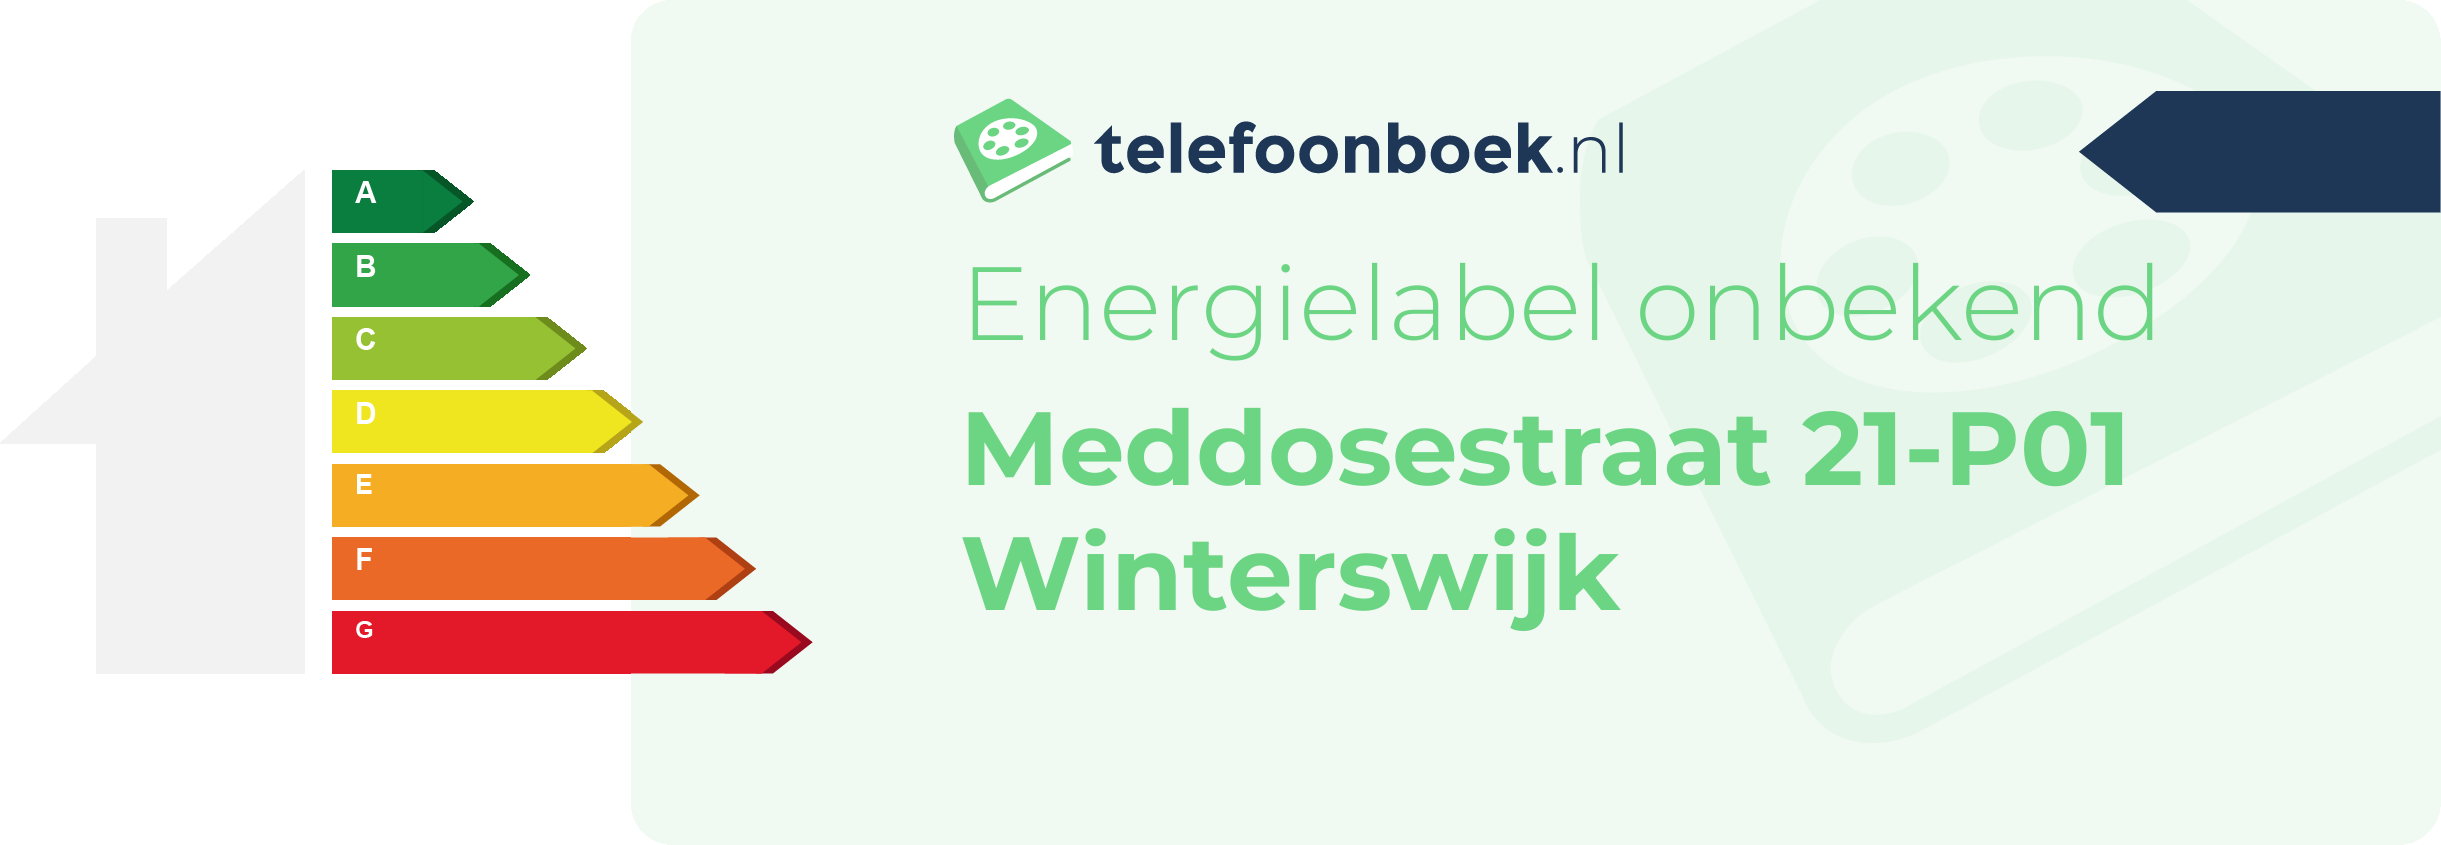 Energielabel Meddosestraat 21-P01 Winterswijk